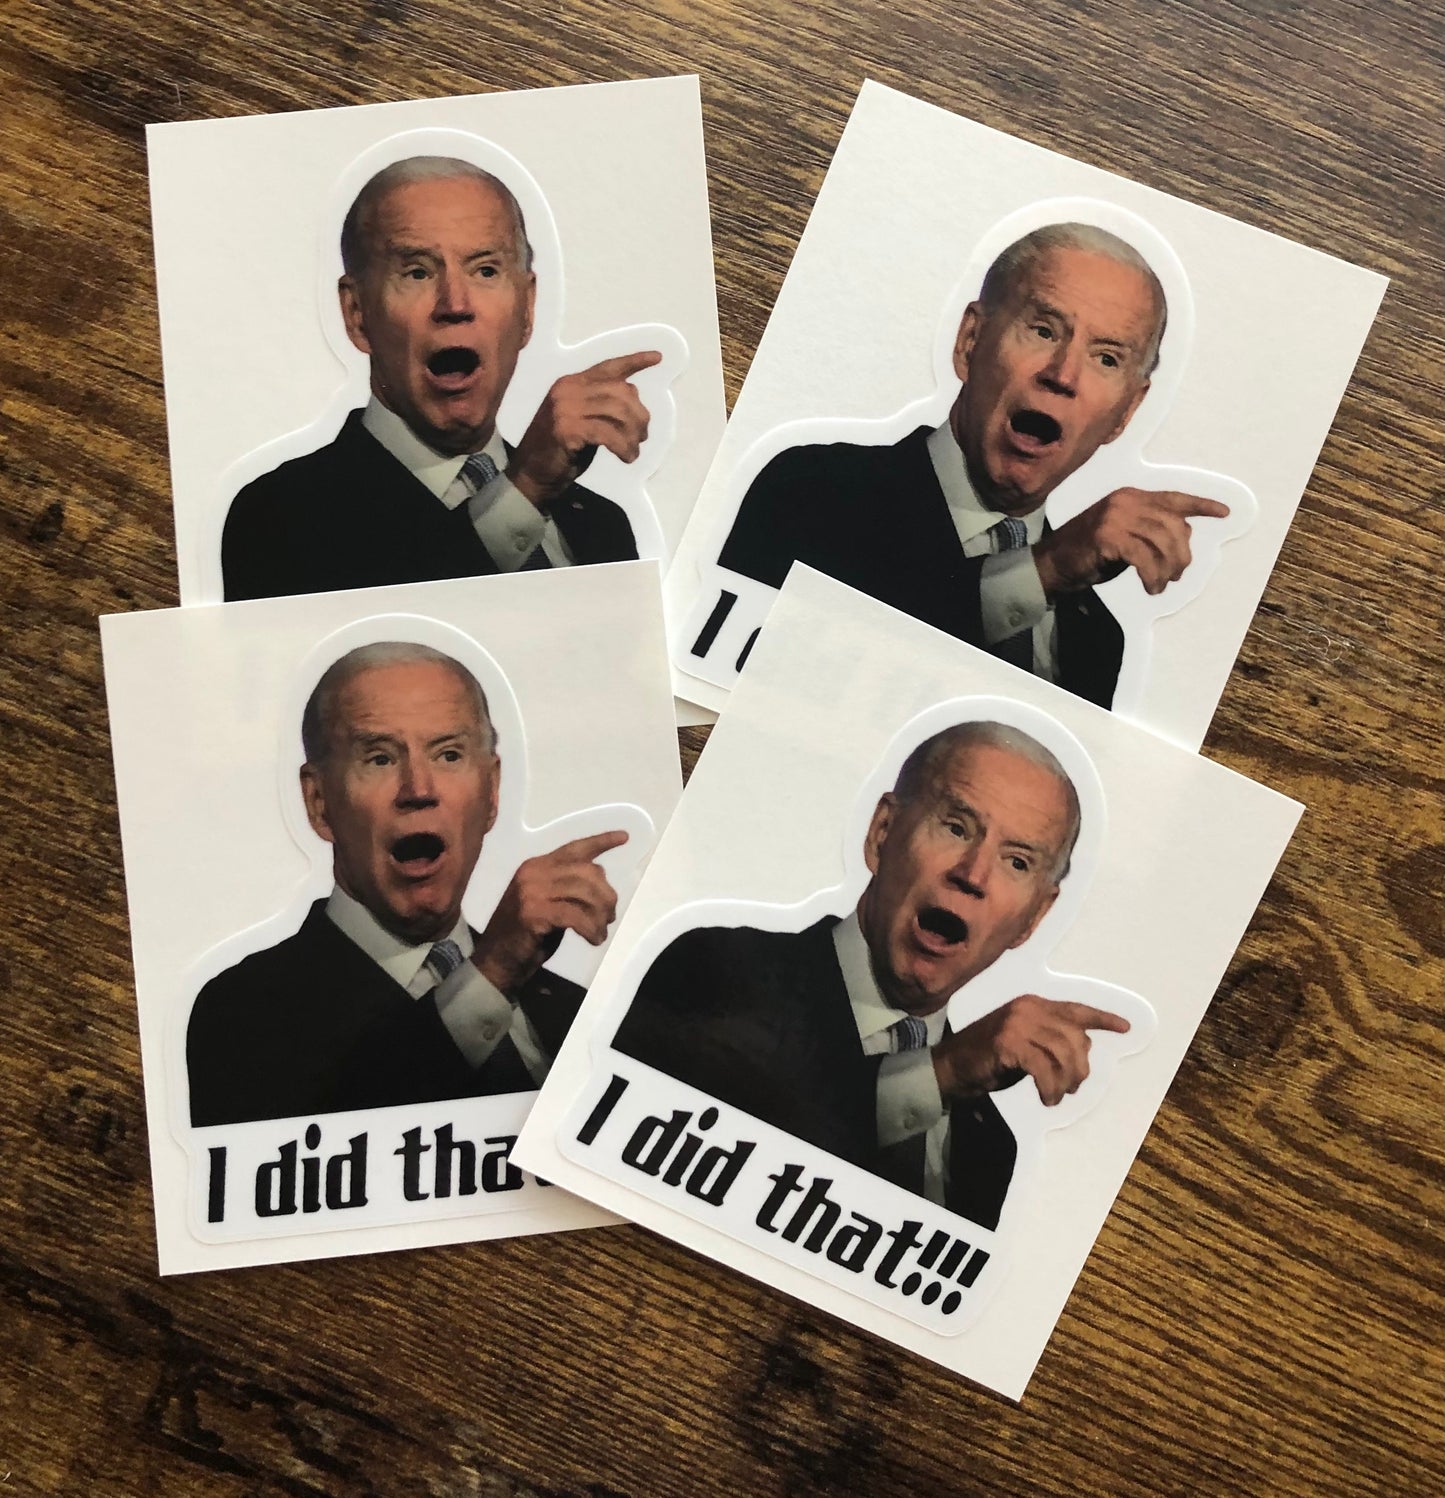 "I Did That!" Joe Biden Stickers